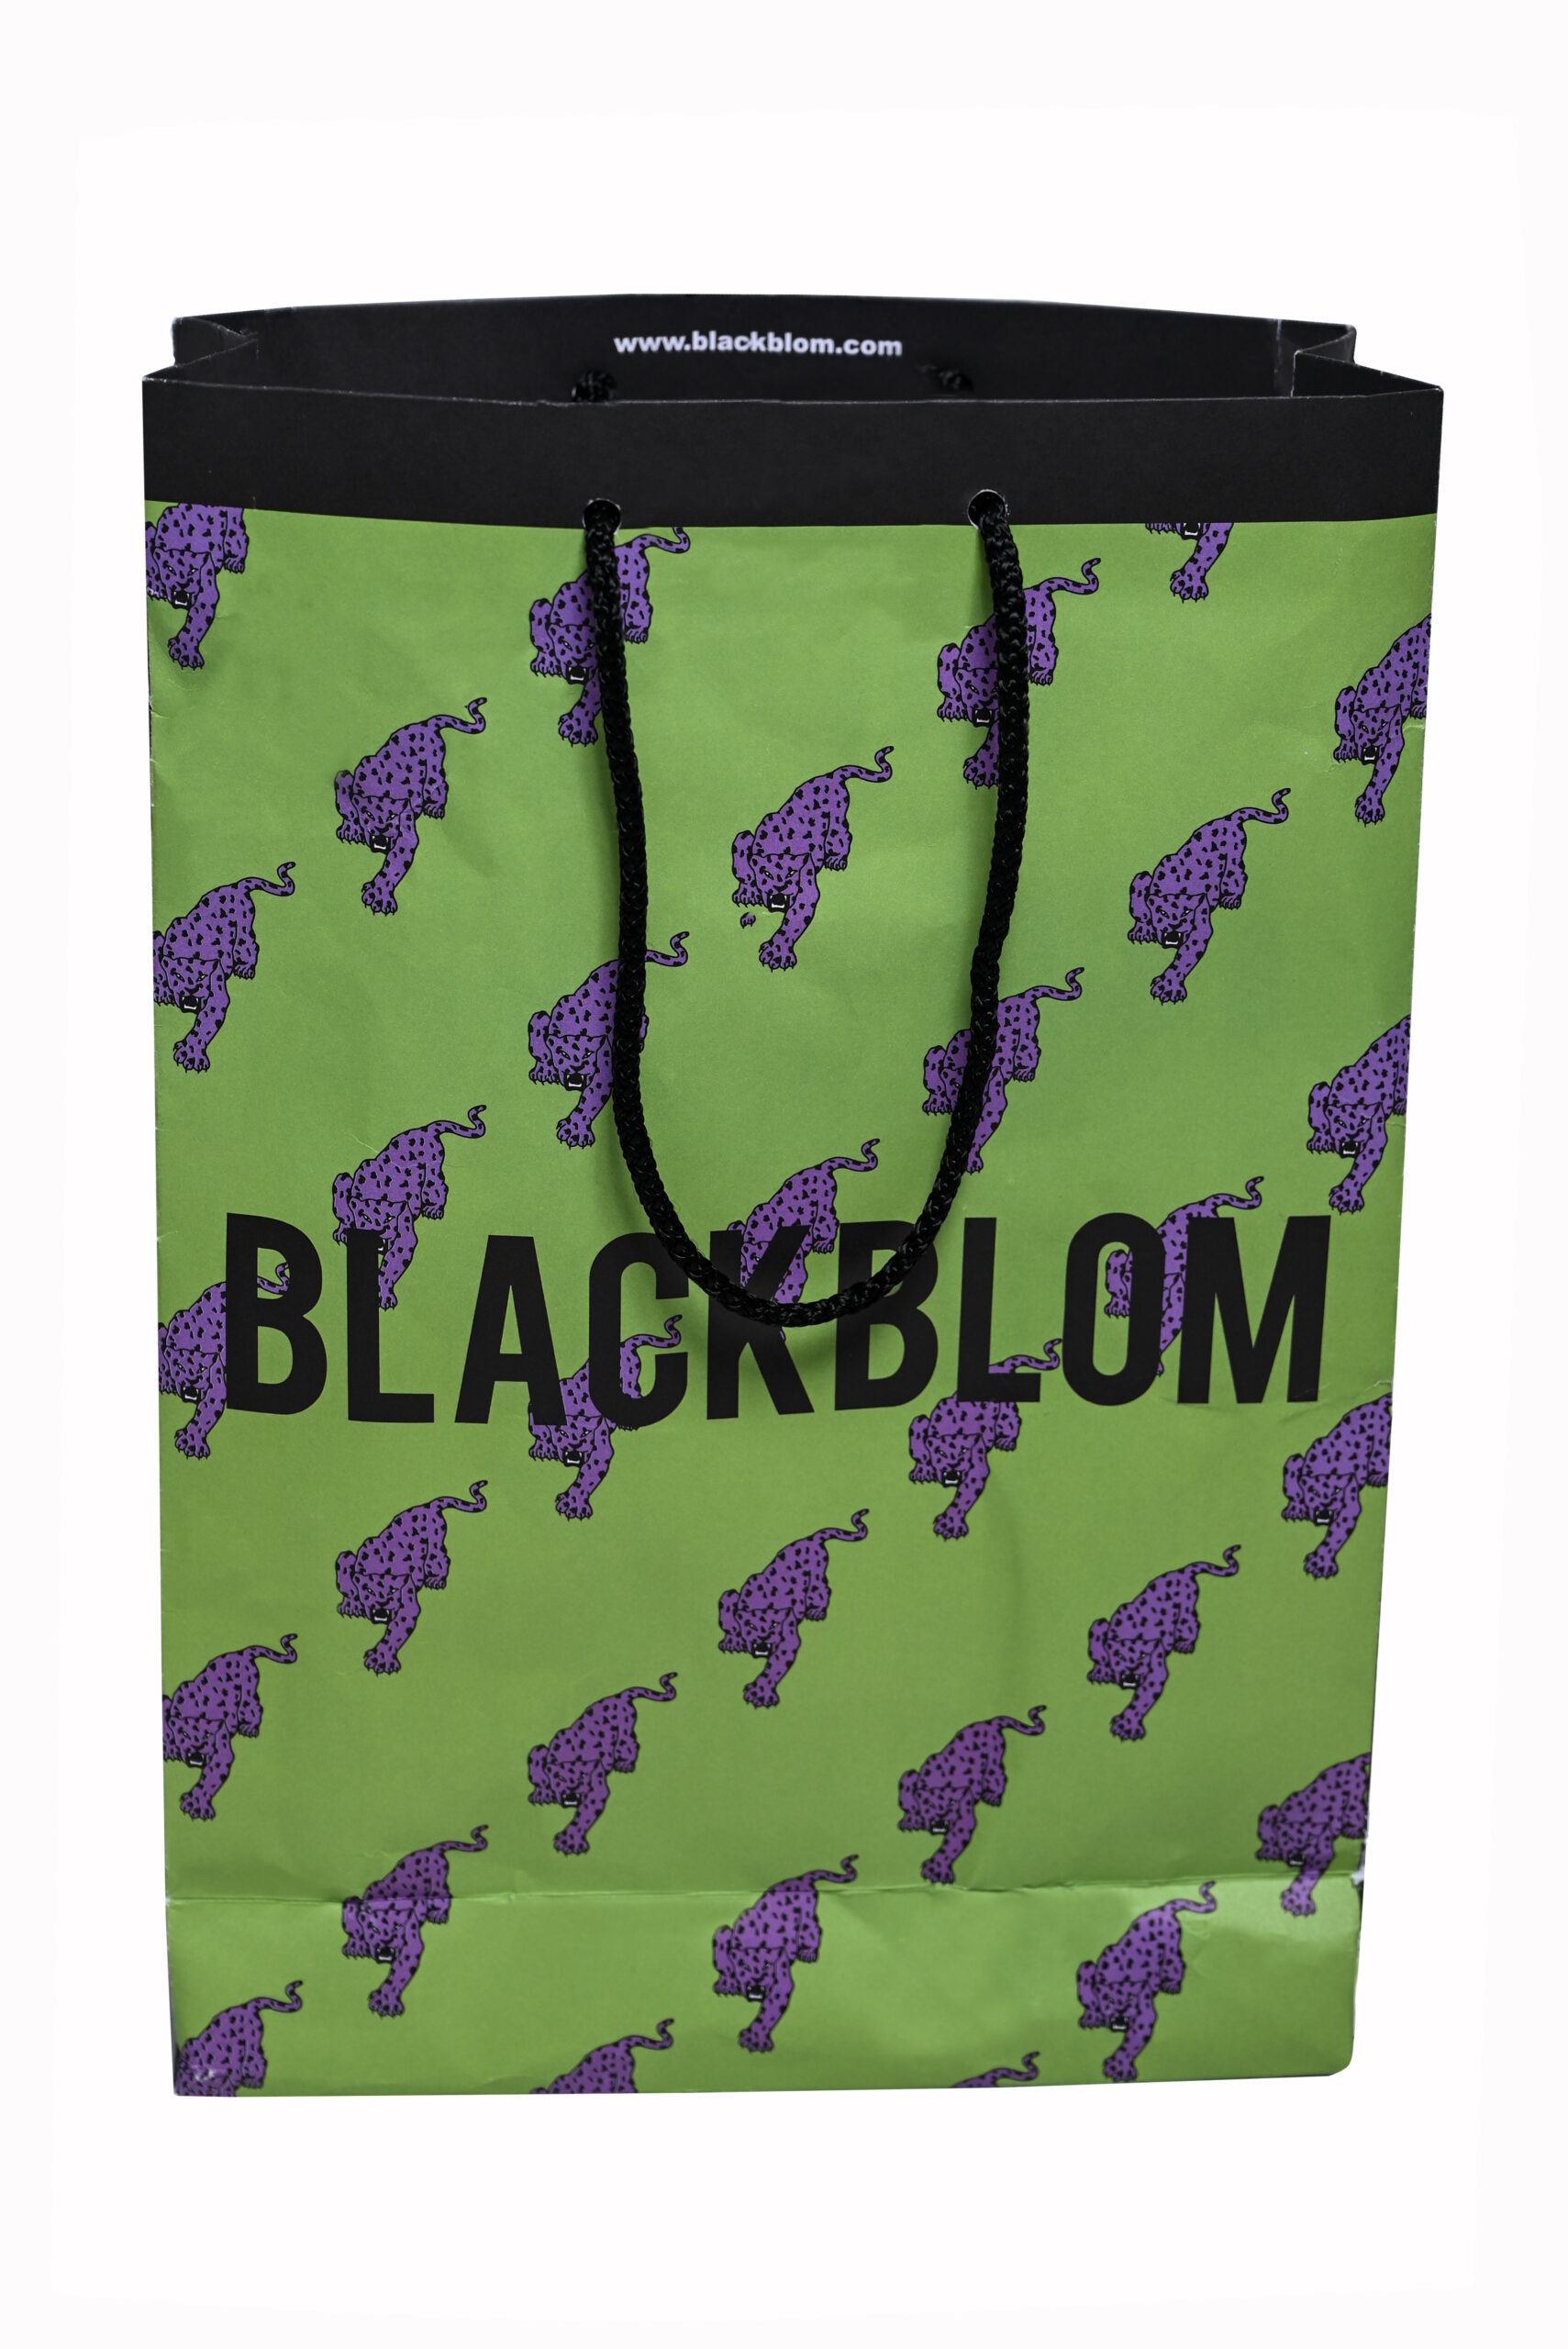 blackblom gift bag